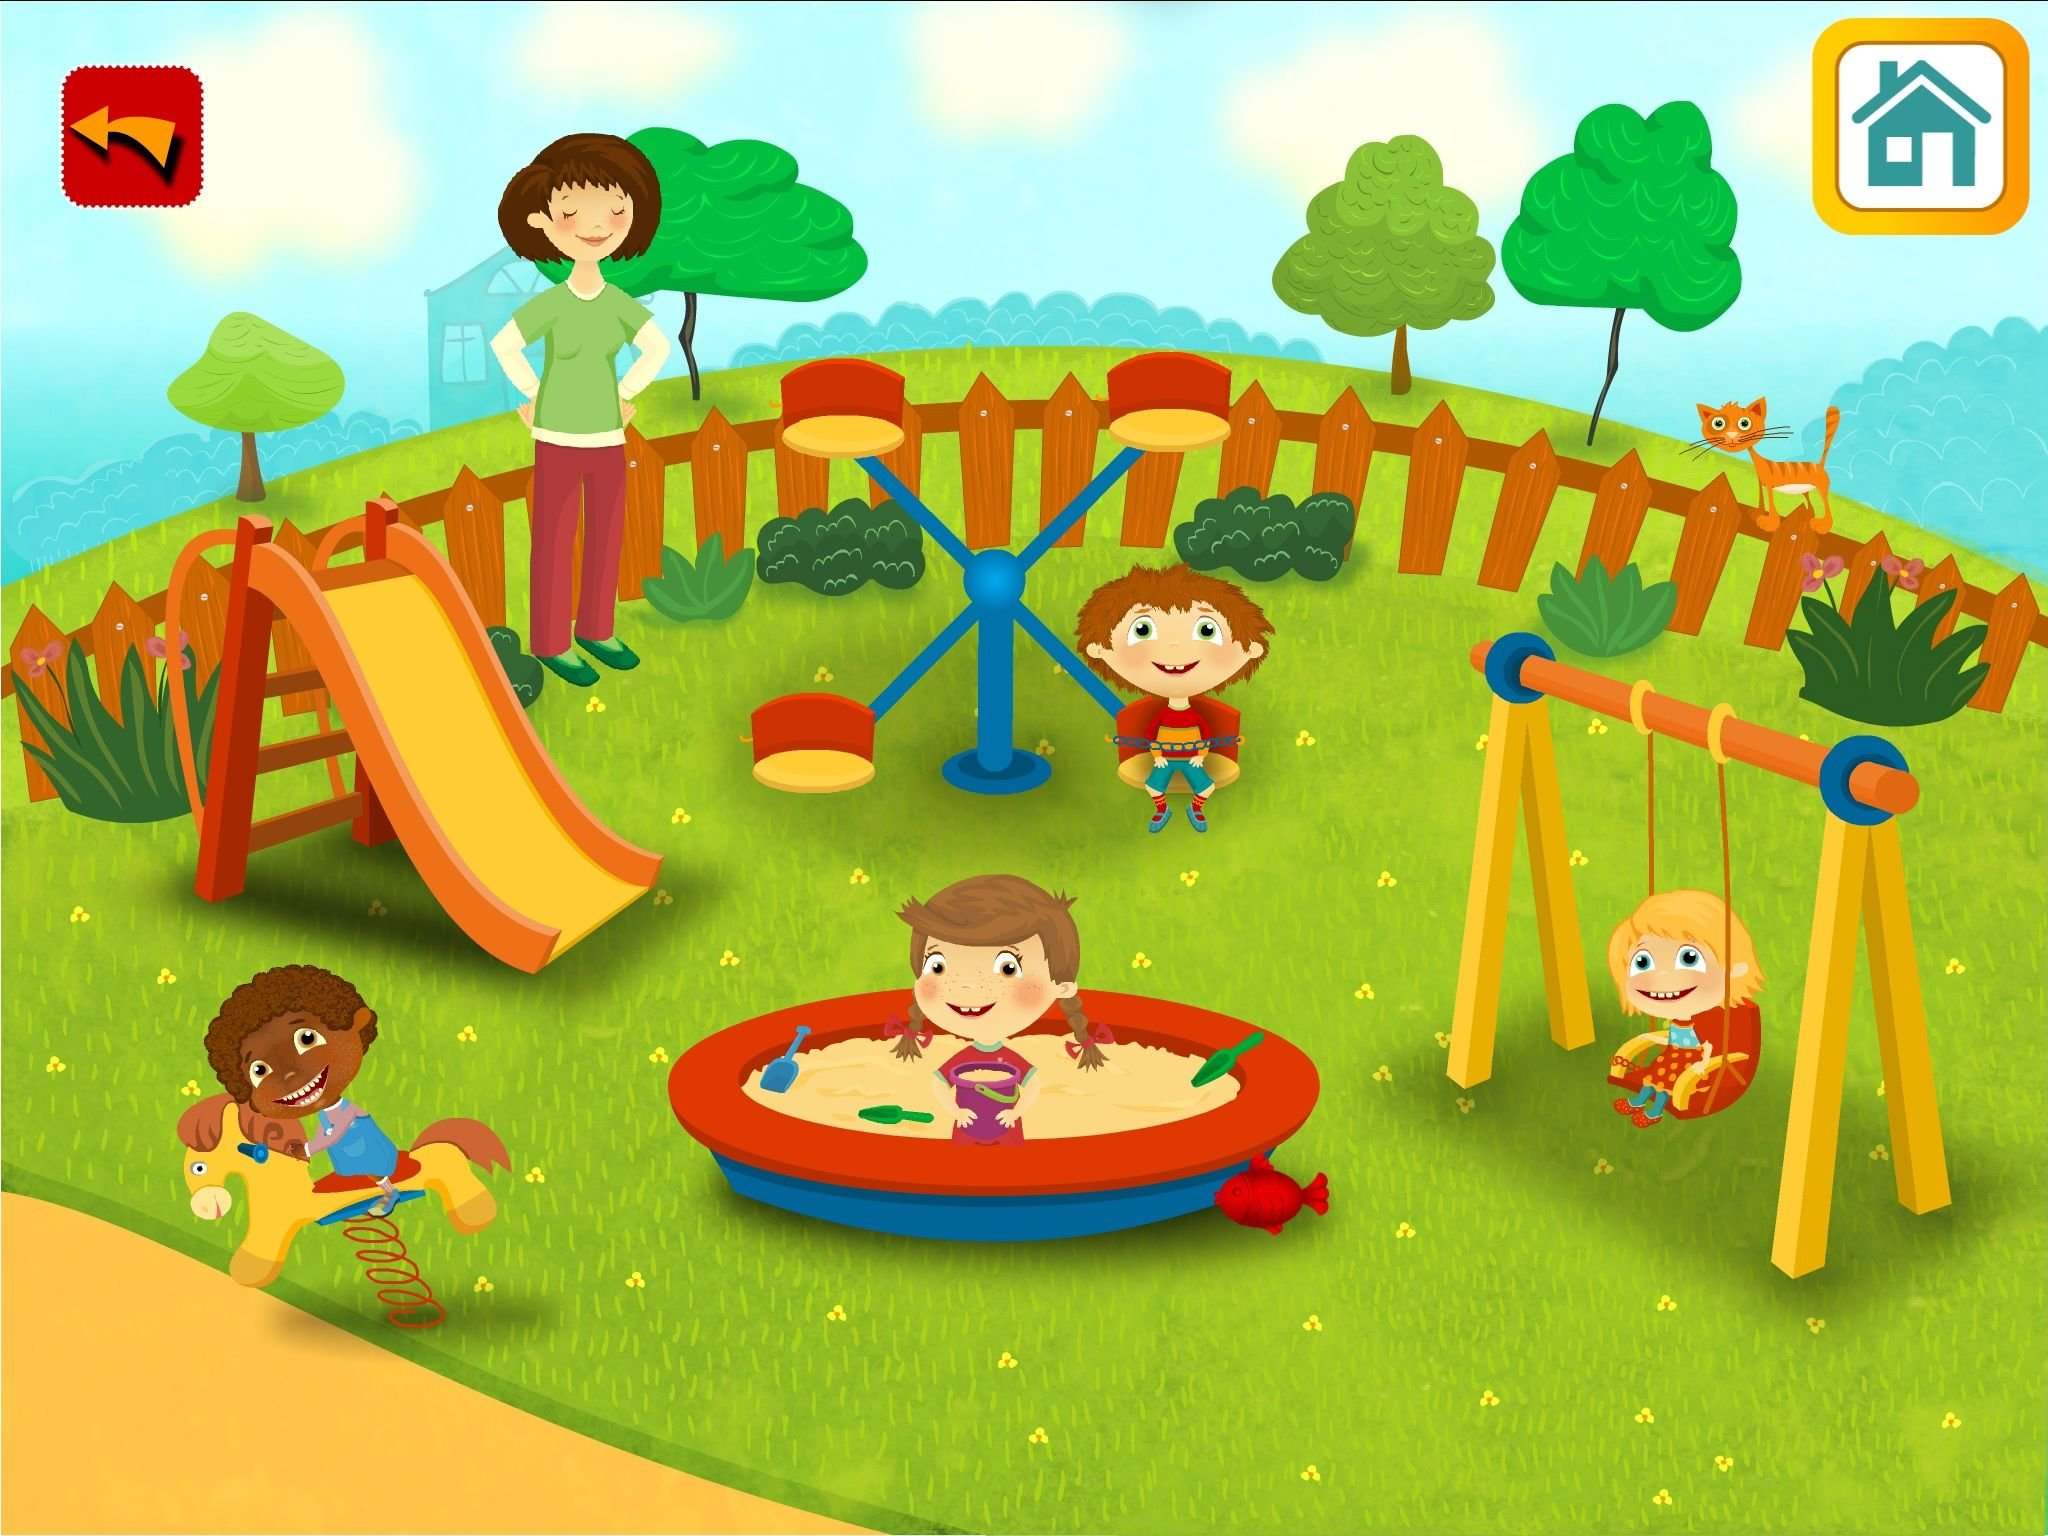 На площадке для игры есть. Детская игровая площадка. Детская площадка для малышей. Игровая площадка в детском саду. Иллюстрация детской площадки.